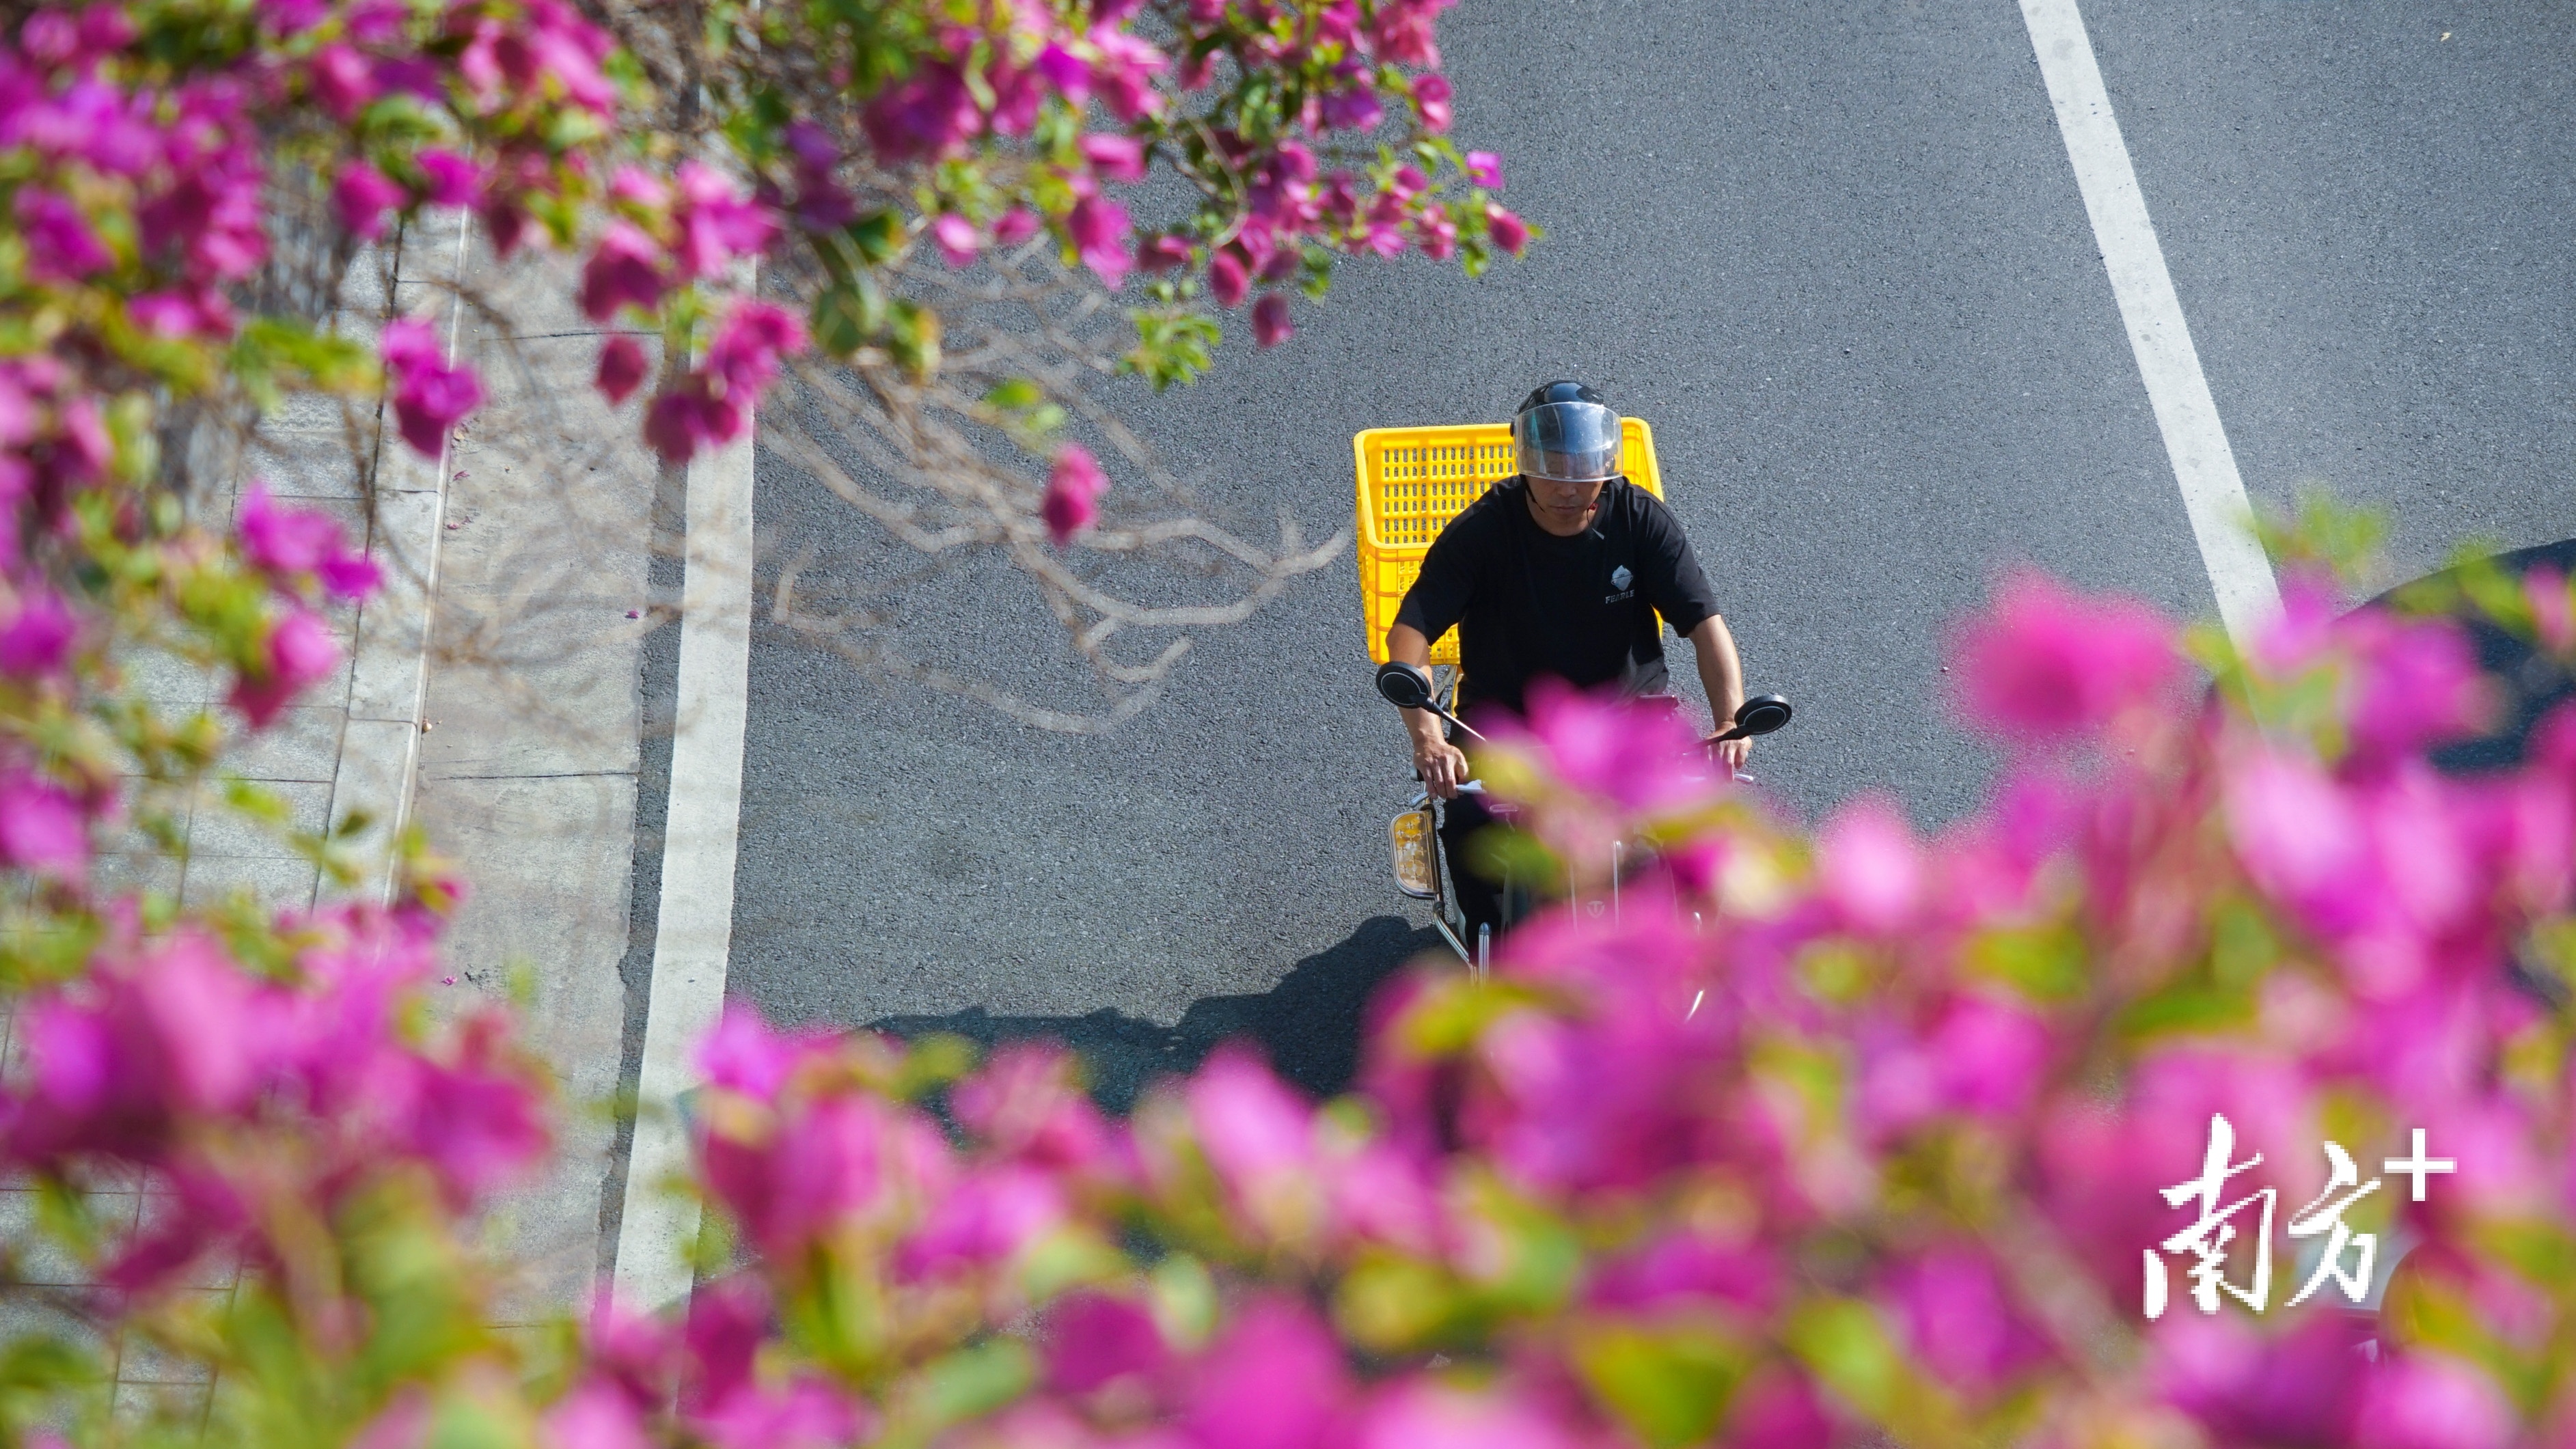 市民骑车路过簕杜鹃“花海”。 南方+ 李姗恒 拍摄